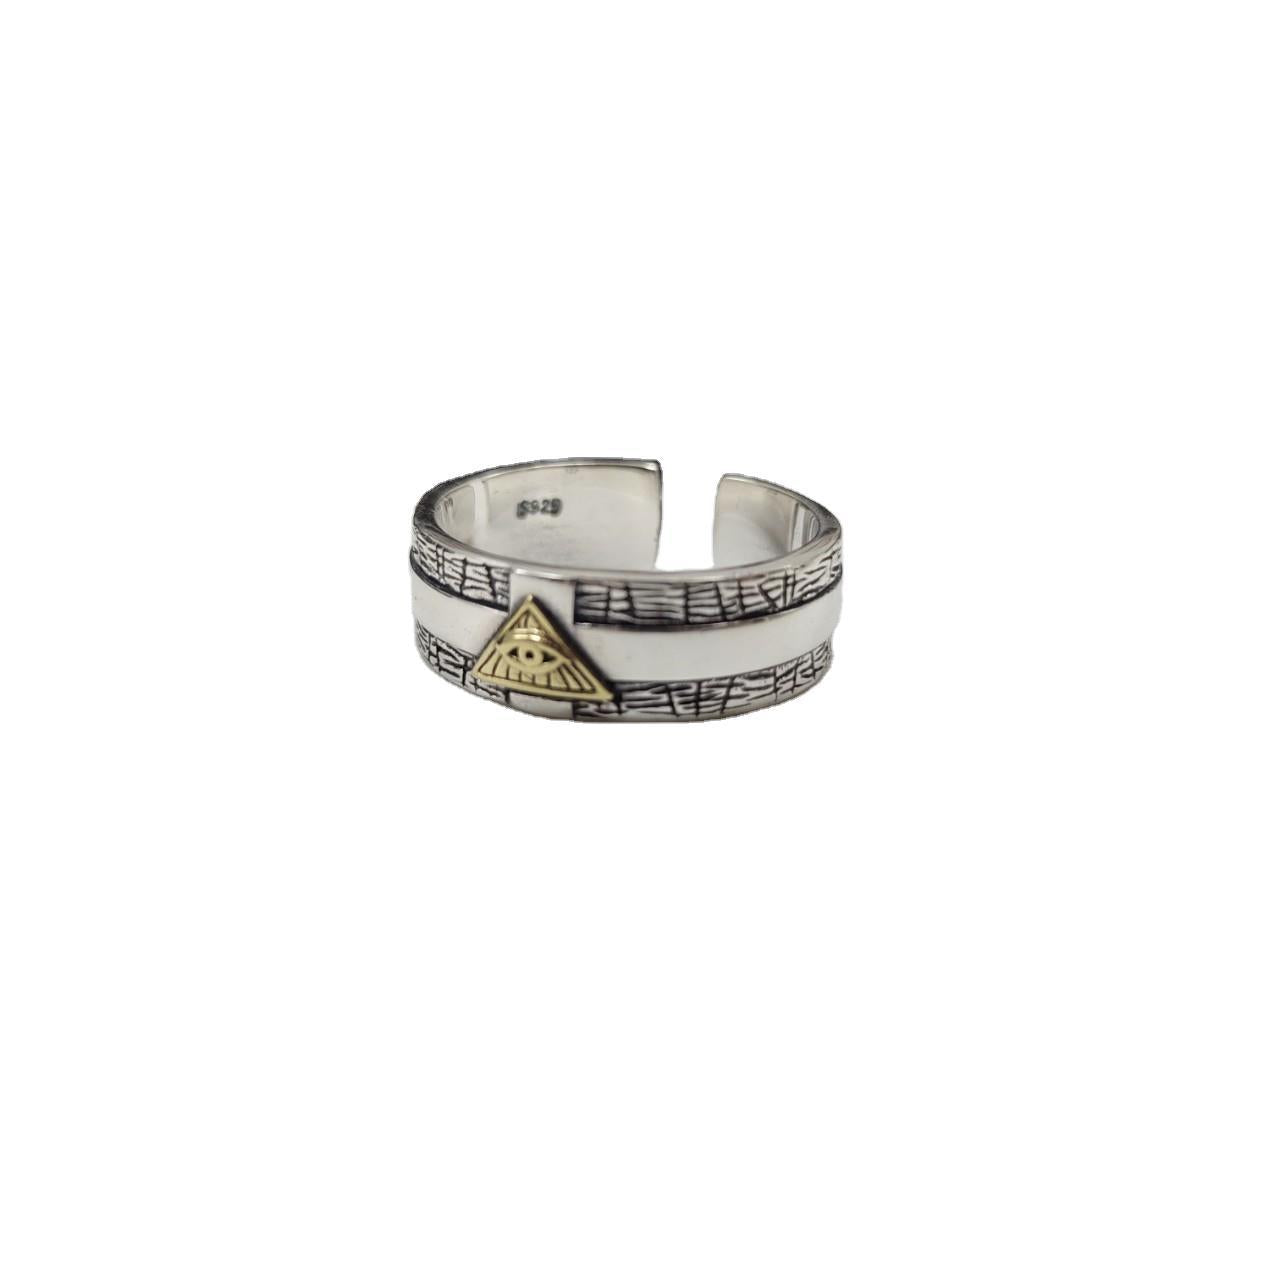 Adjustable 925 Sterling Silver Tube Ring for Index Finger